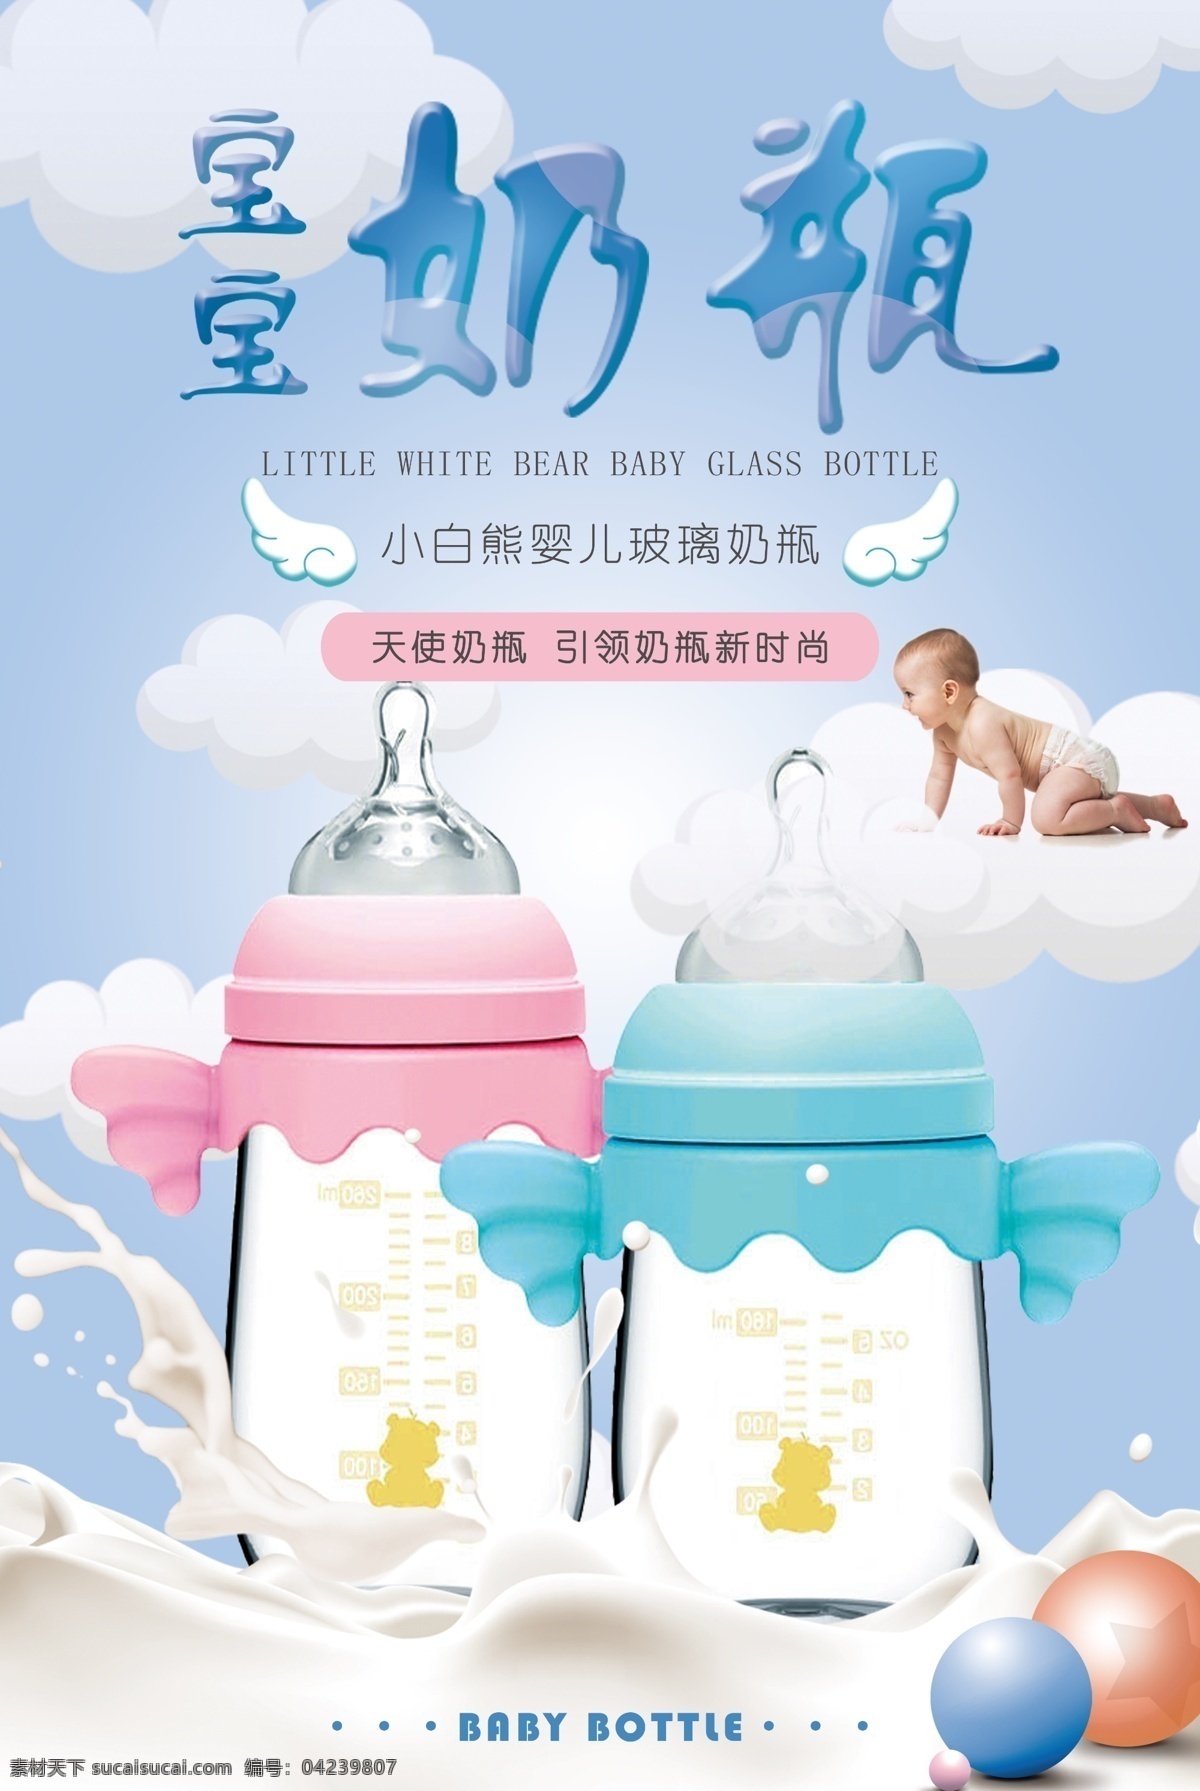 奶瓶海报 婴儿用品 儿童用品 用品馆 婴儿海报 婴儿用品海报 月子 月子海报 坐月子 孕妇 怀孕海报 海报类单页类